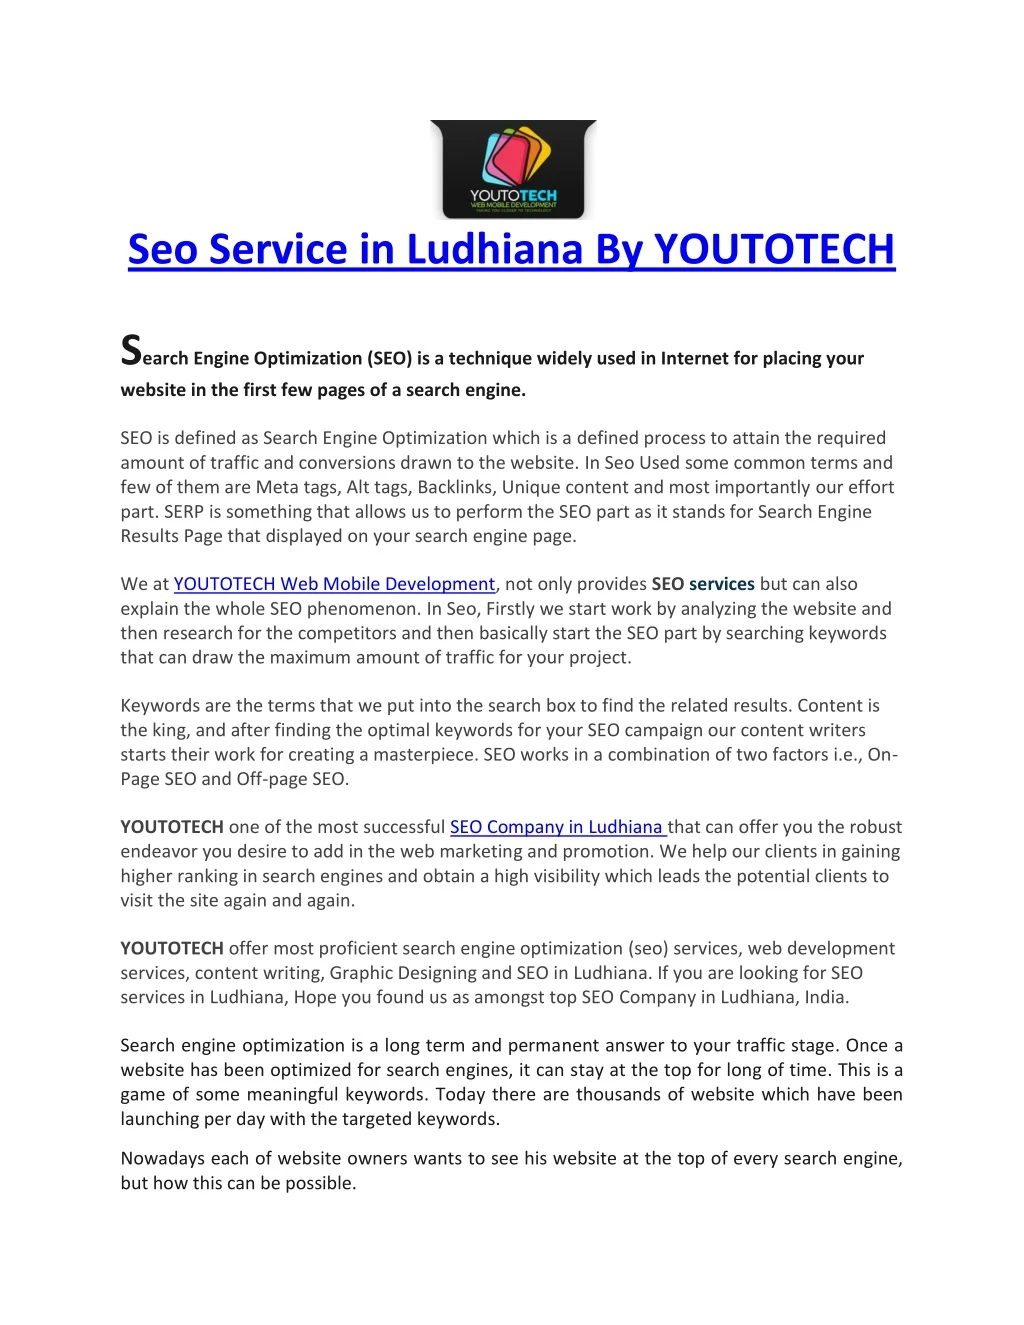 seo service in ludhiana by youtotech